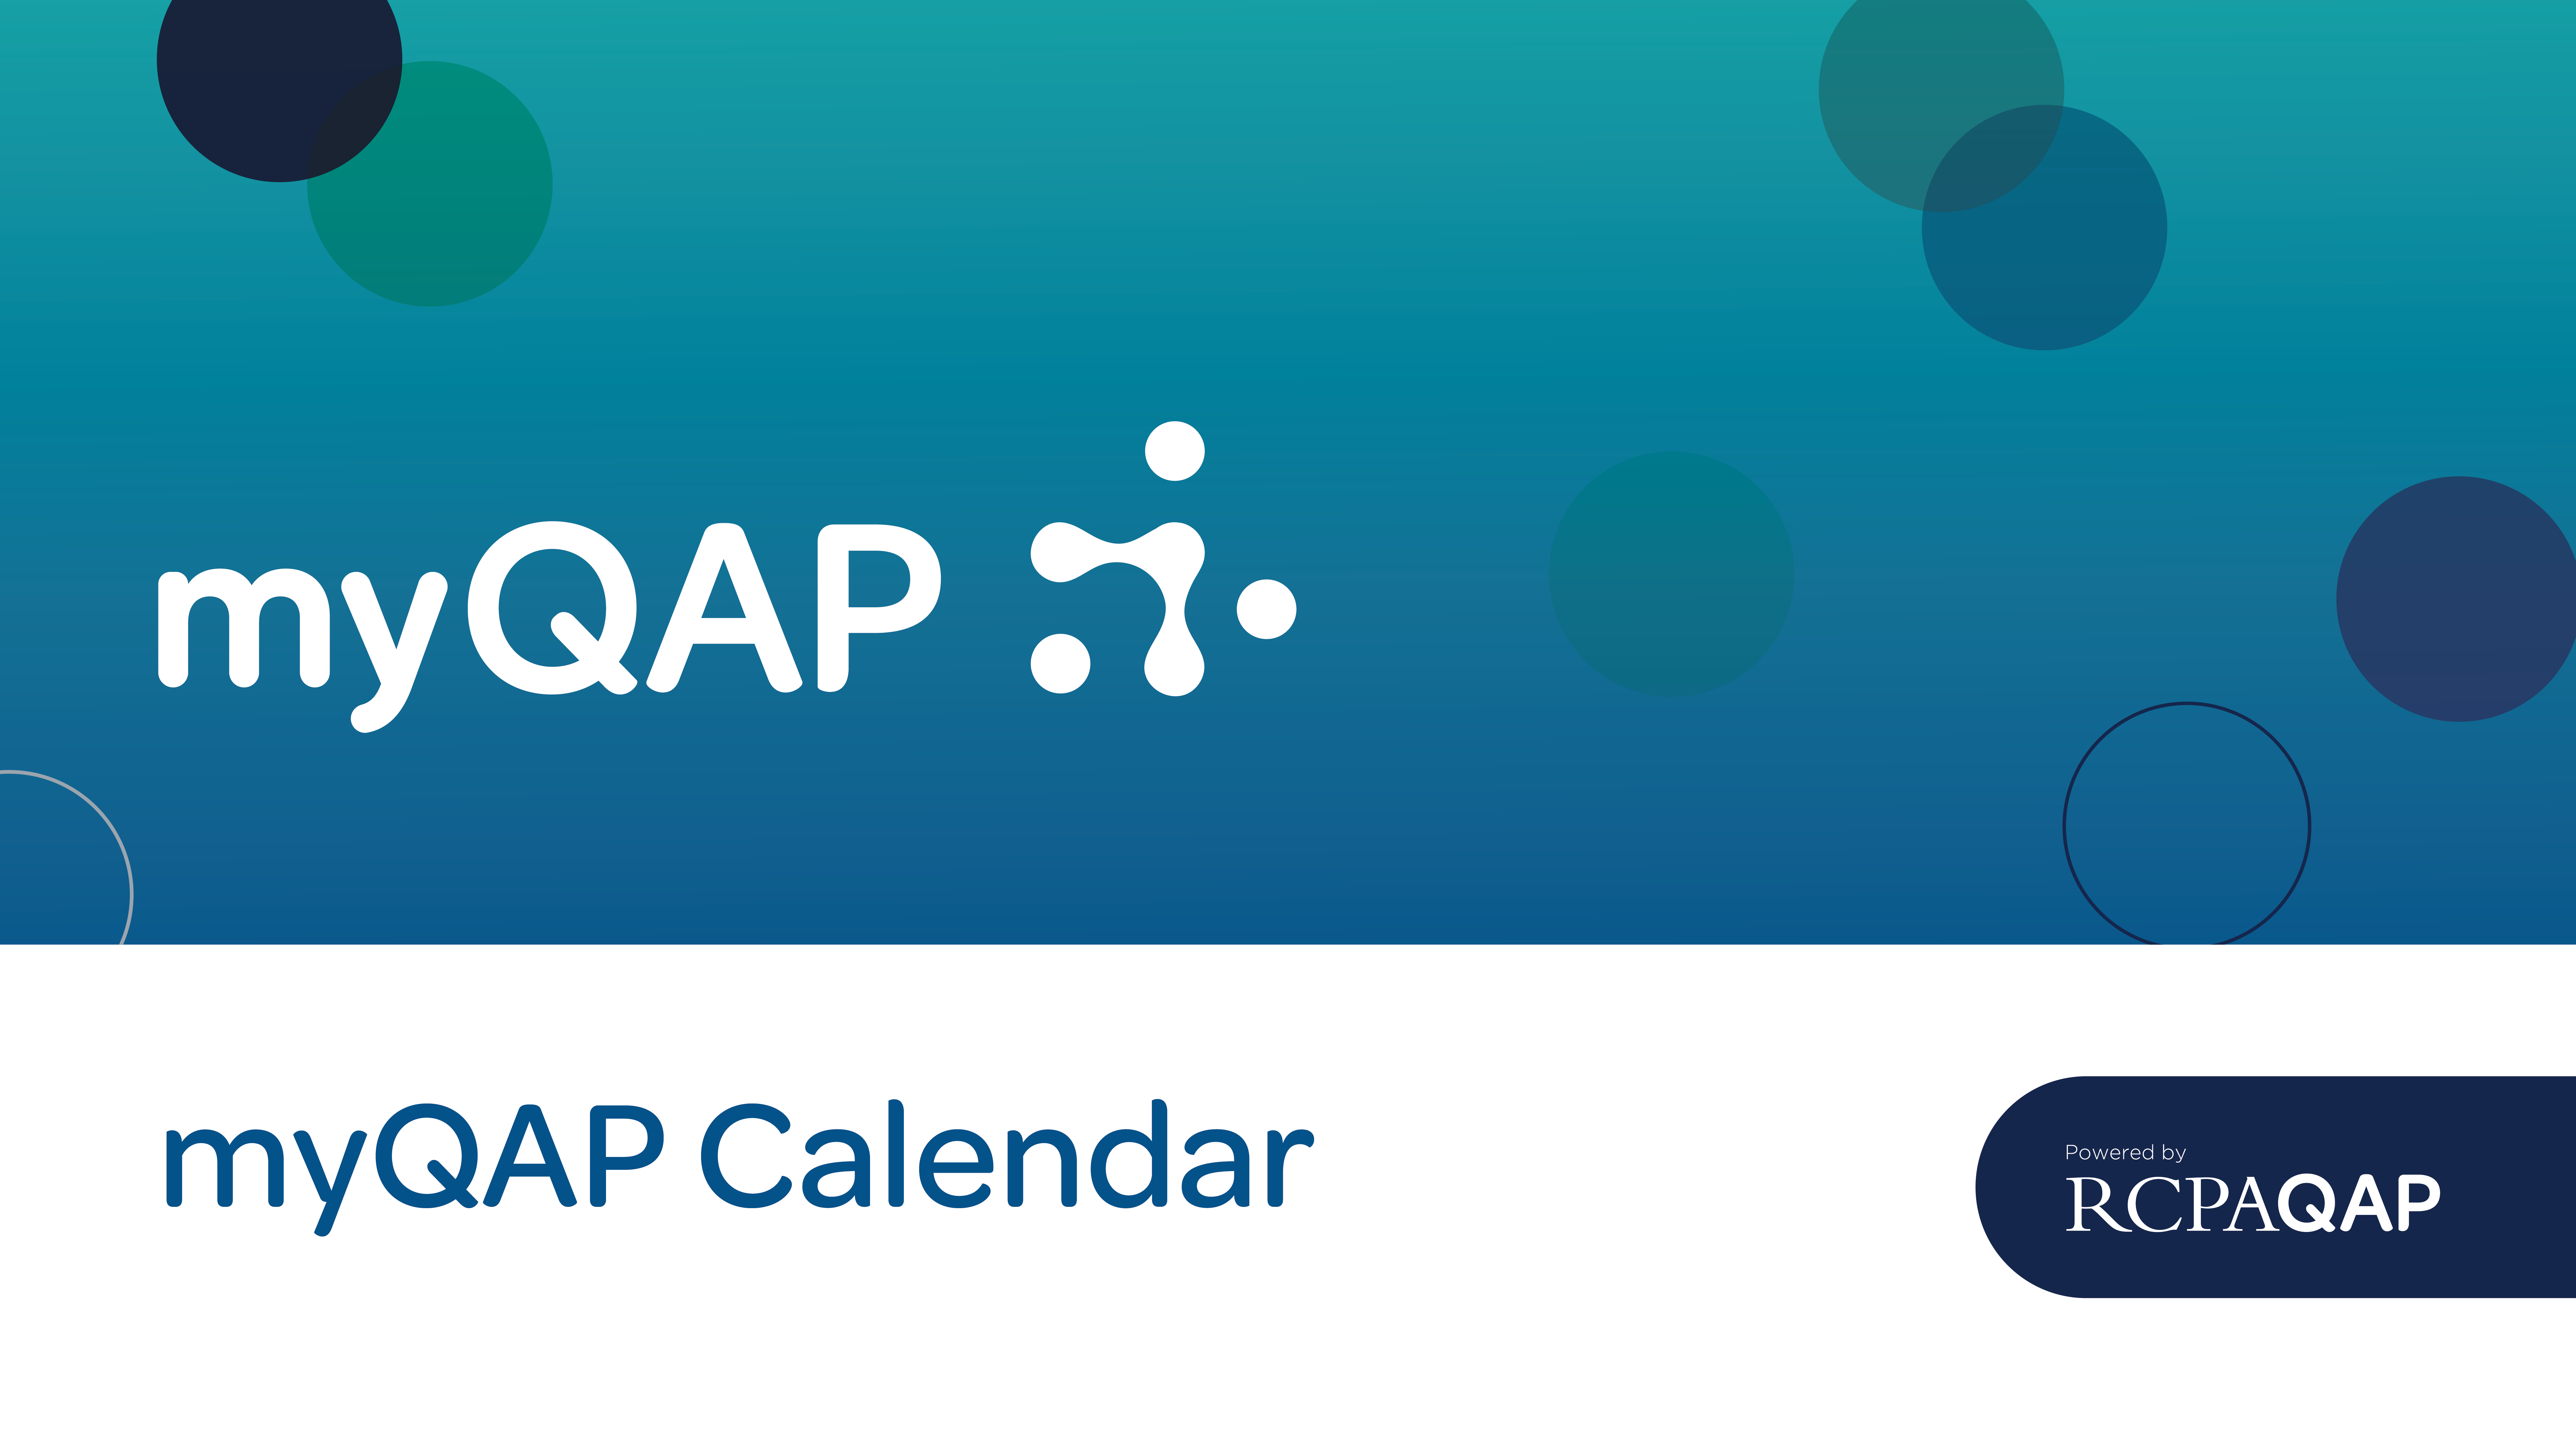 myQAP Calendar